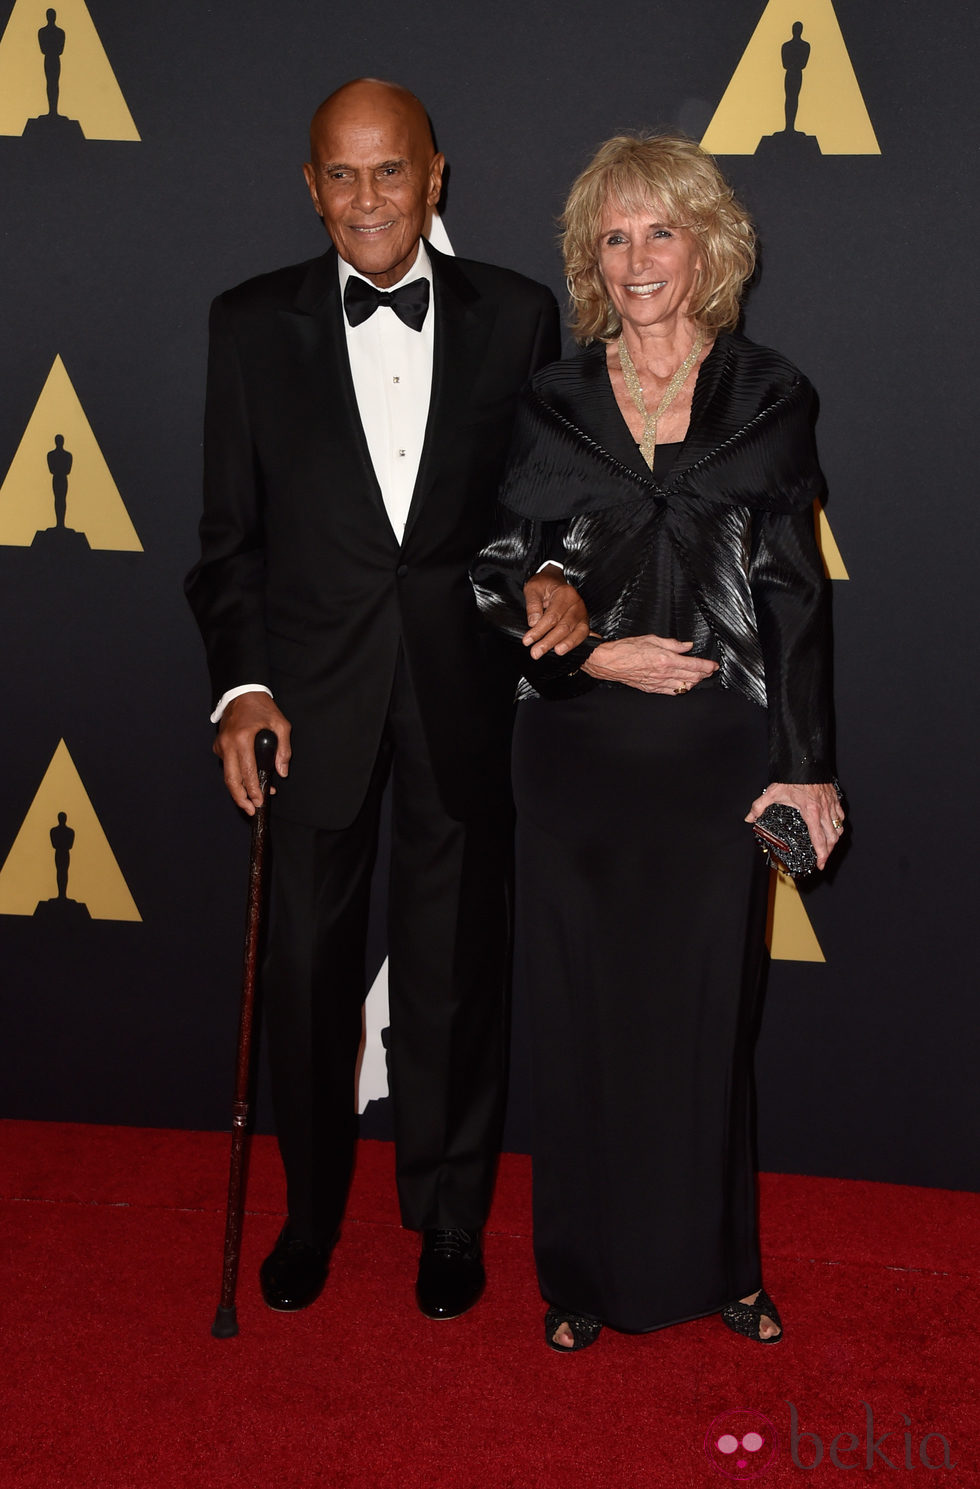 Harry Belafonte y Pamela Frank en los 'Premios Governors' 2014